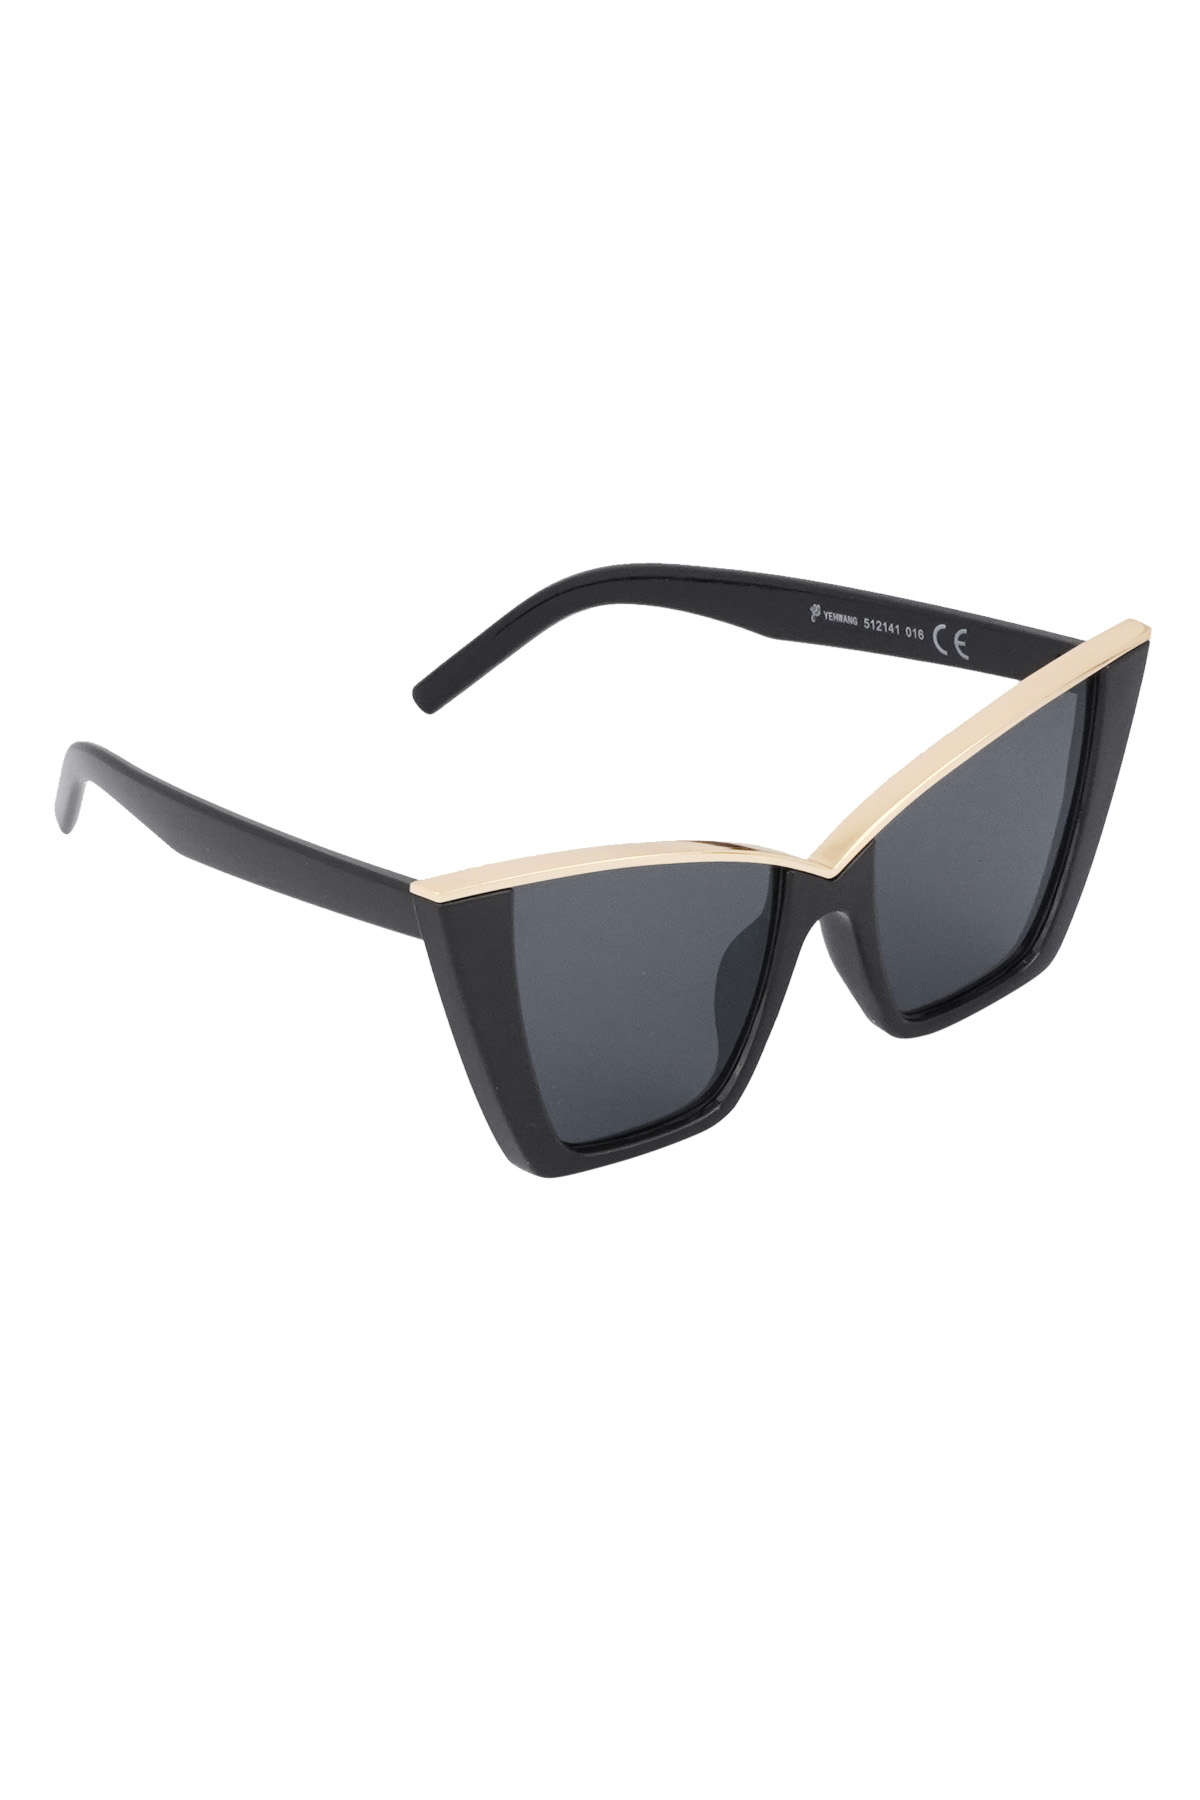 Schicke Sonnenbrille - schwarz h5 